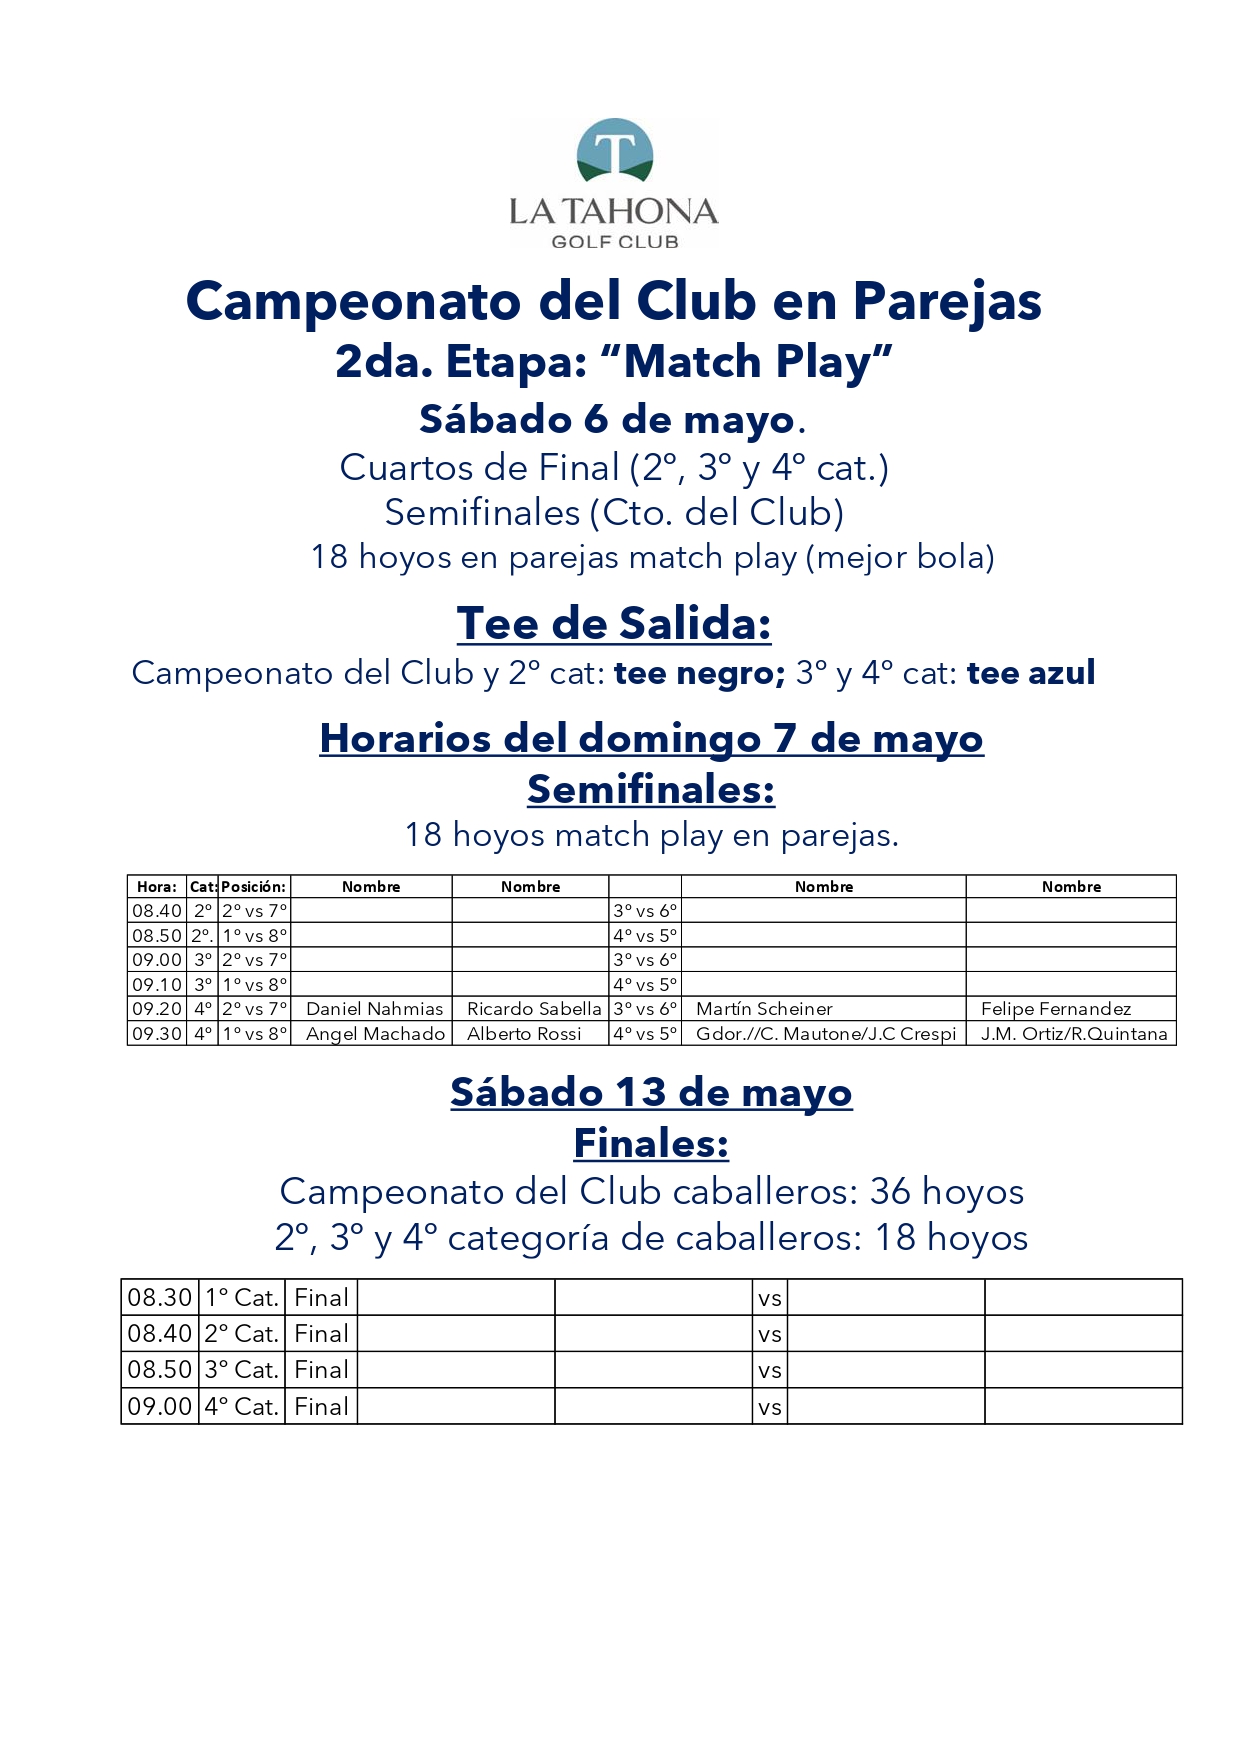 Campeonato del Club en Parejas - Sbado 6 de mayo - Informacin para los golfistas